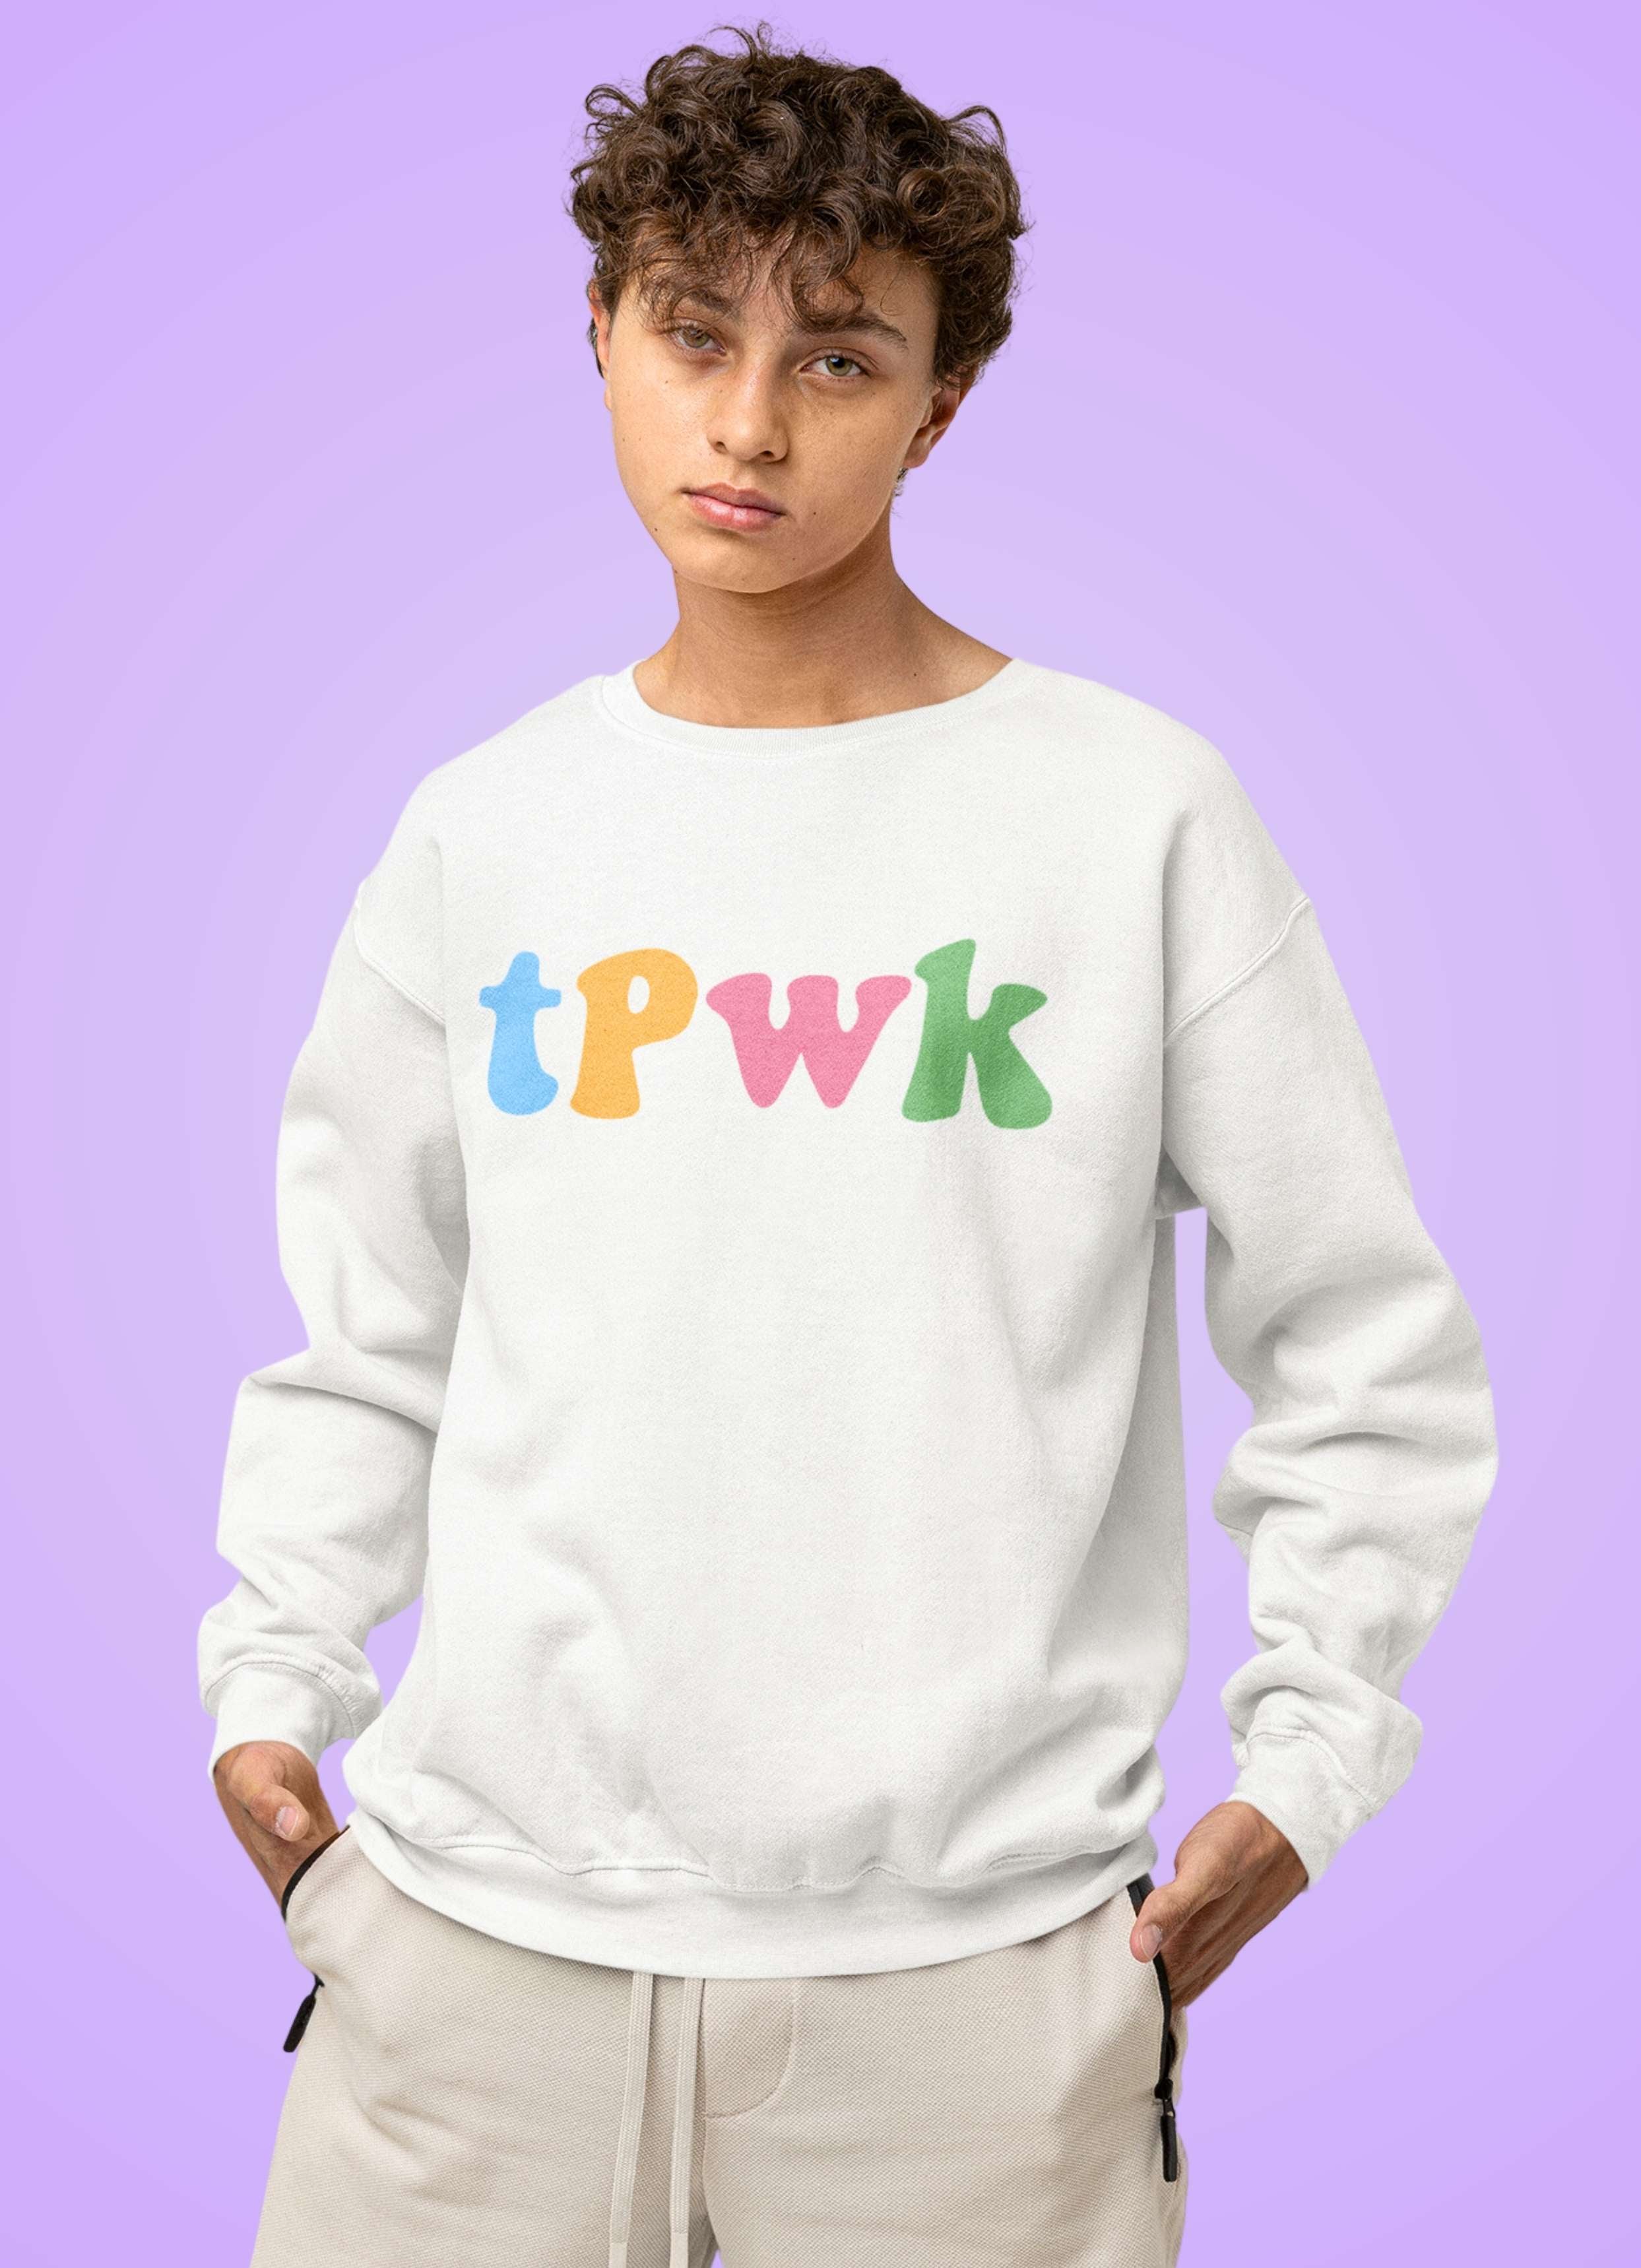 Harry Styles TPWK Unisex Sweatshirt